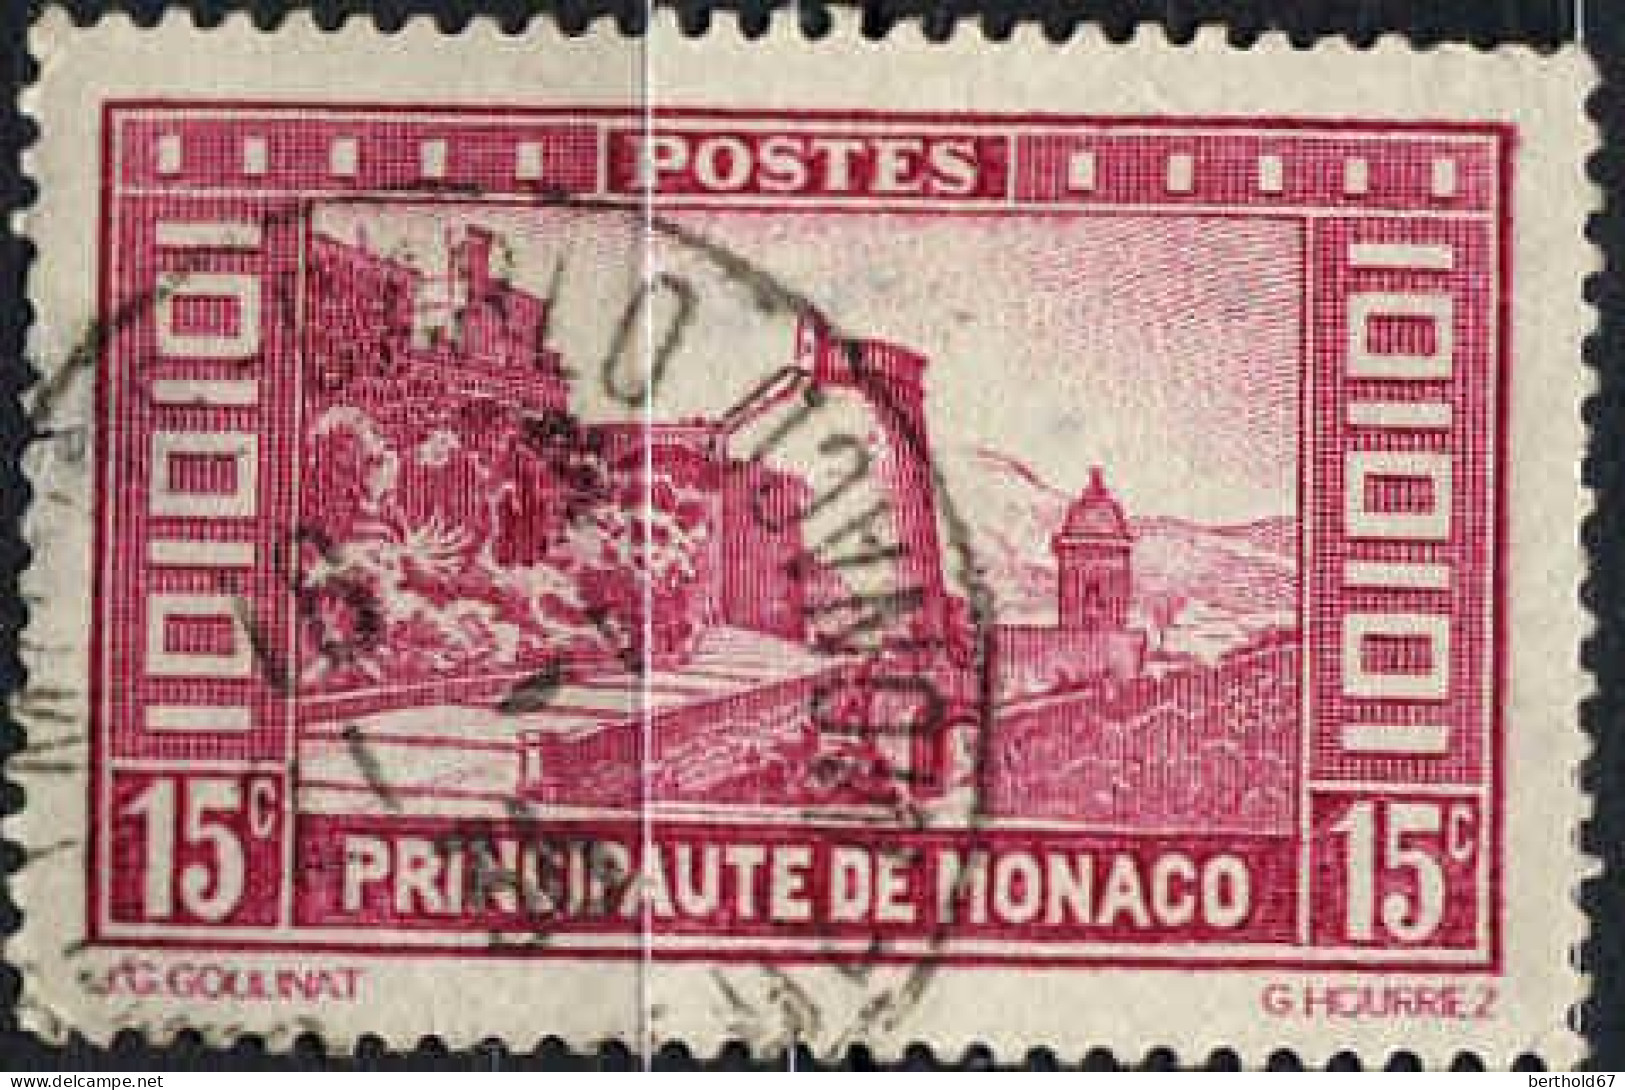 Monaco Poste Obl Yv: 119 Mi:120 La Montée Au Palais Rampe Major (TB Cachet à Date) 1-1-35 - Oblitérés